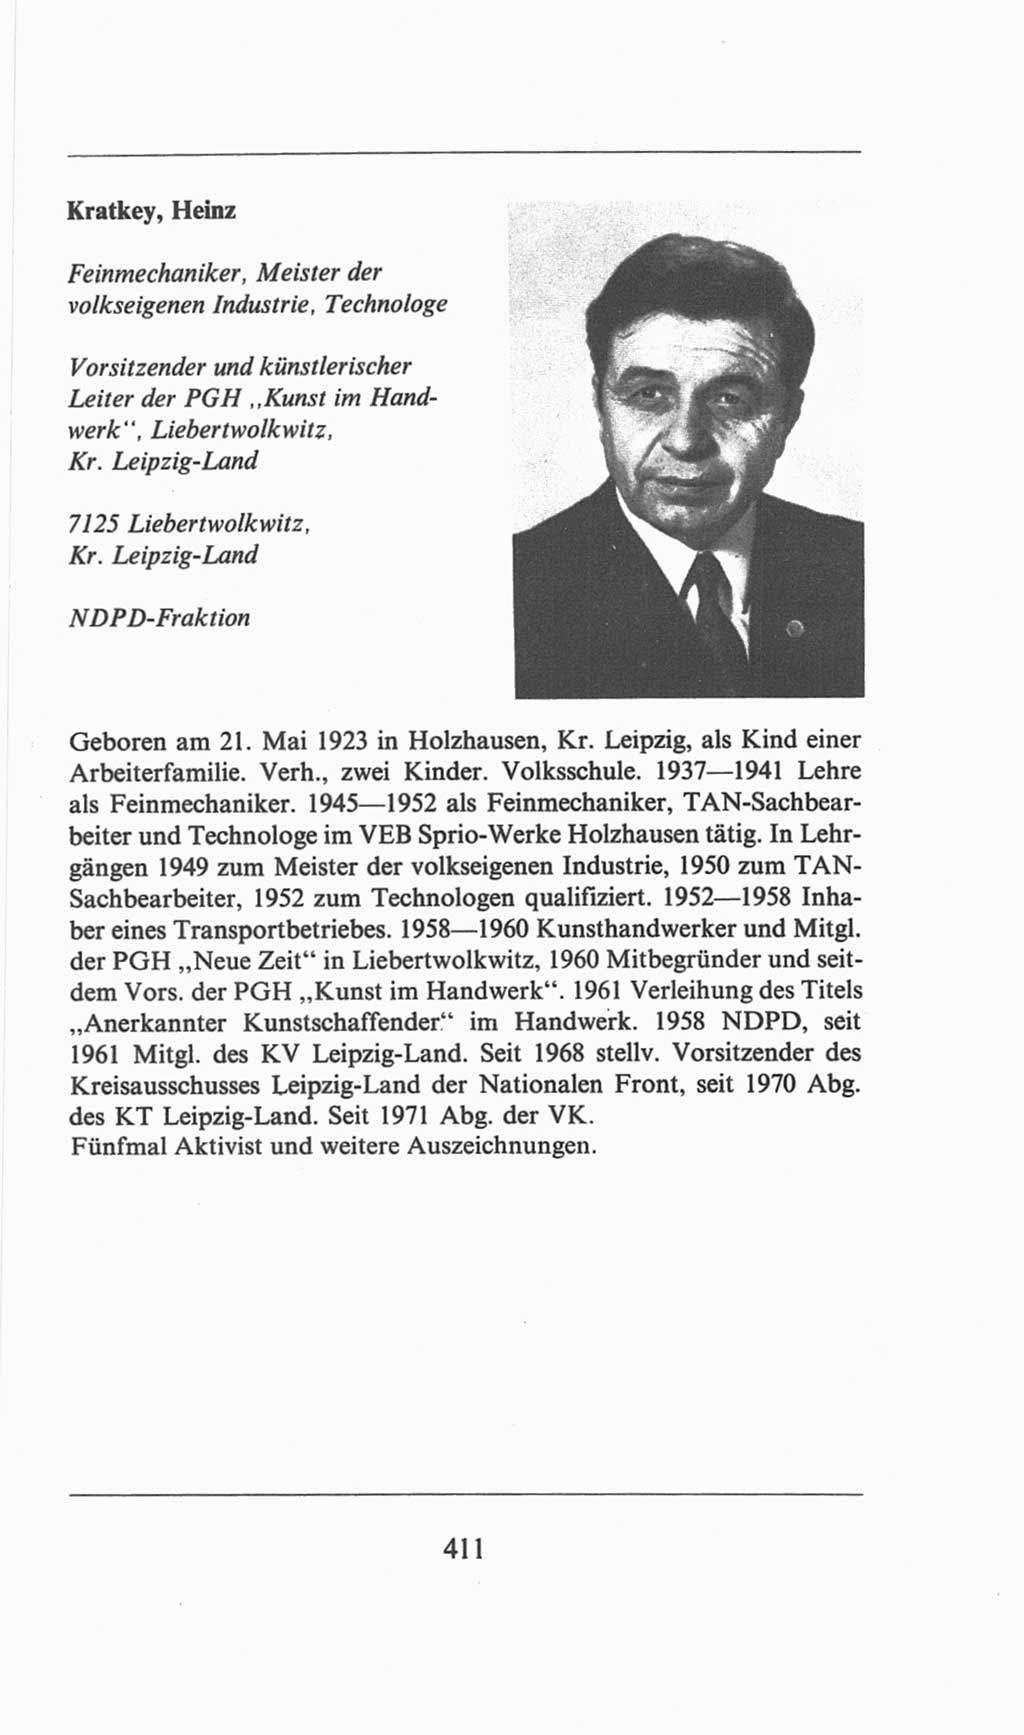 Volkskammer (VK) der Deutschen Demokratischen Republik (DDR), 6. Wahlperiode 1971-1976, Seite 411 (VK. DDR 6. WP. 1971-1976, S. 411)